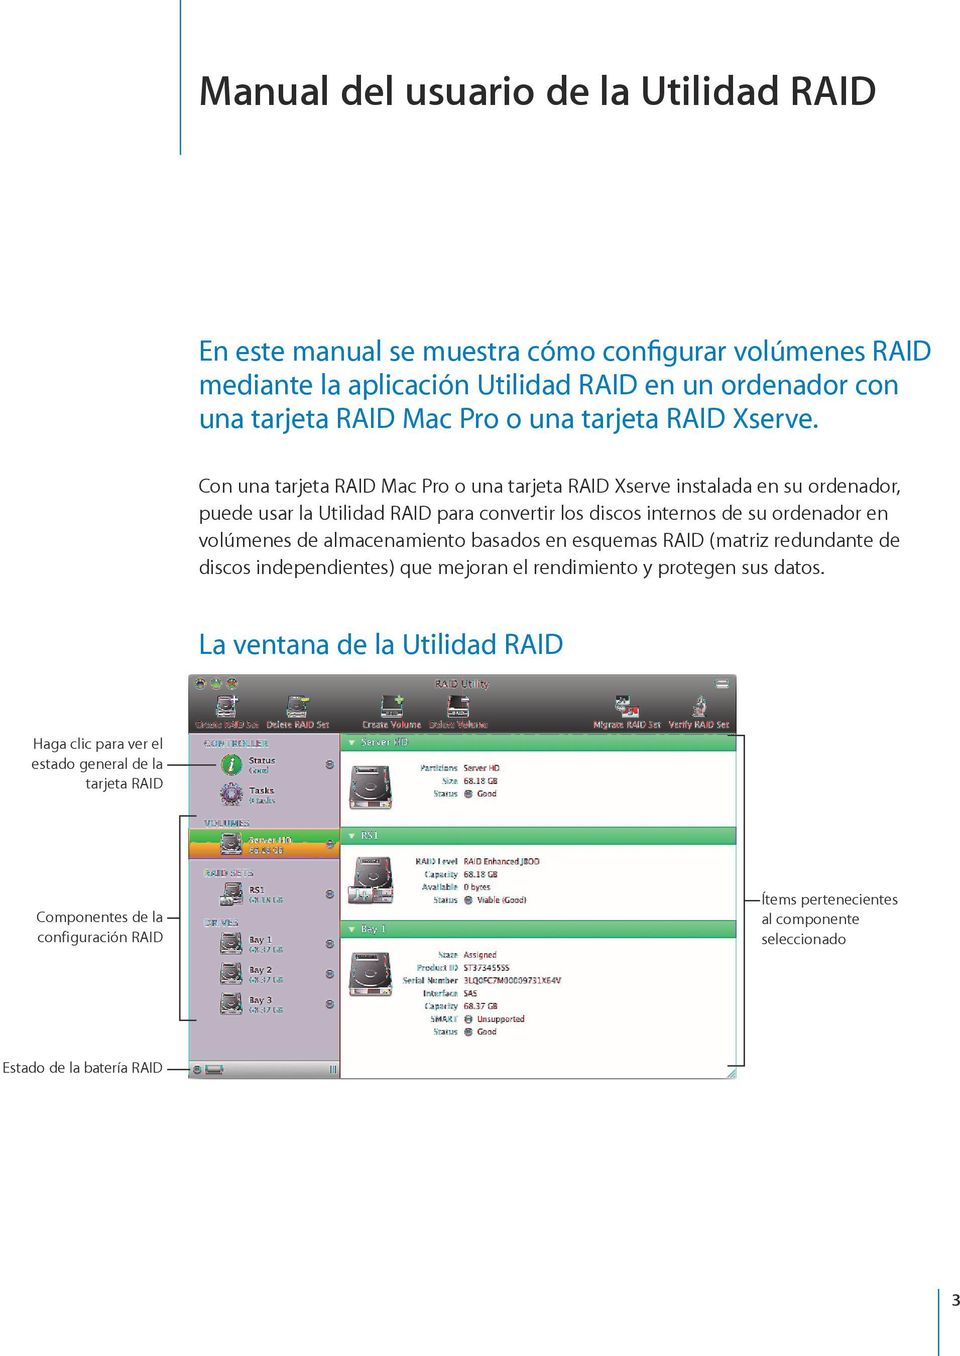 Con una tarjeta RAID Mac Pro o una tarjeta RAID Xserve instalada en su ordenador, puede usar la Utilidad RAID para convertir los discos internos de su ordenador en volúmenes de